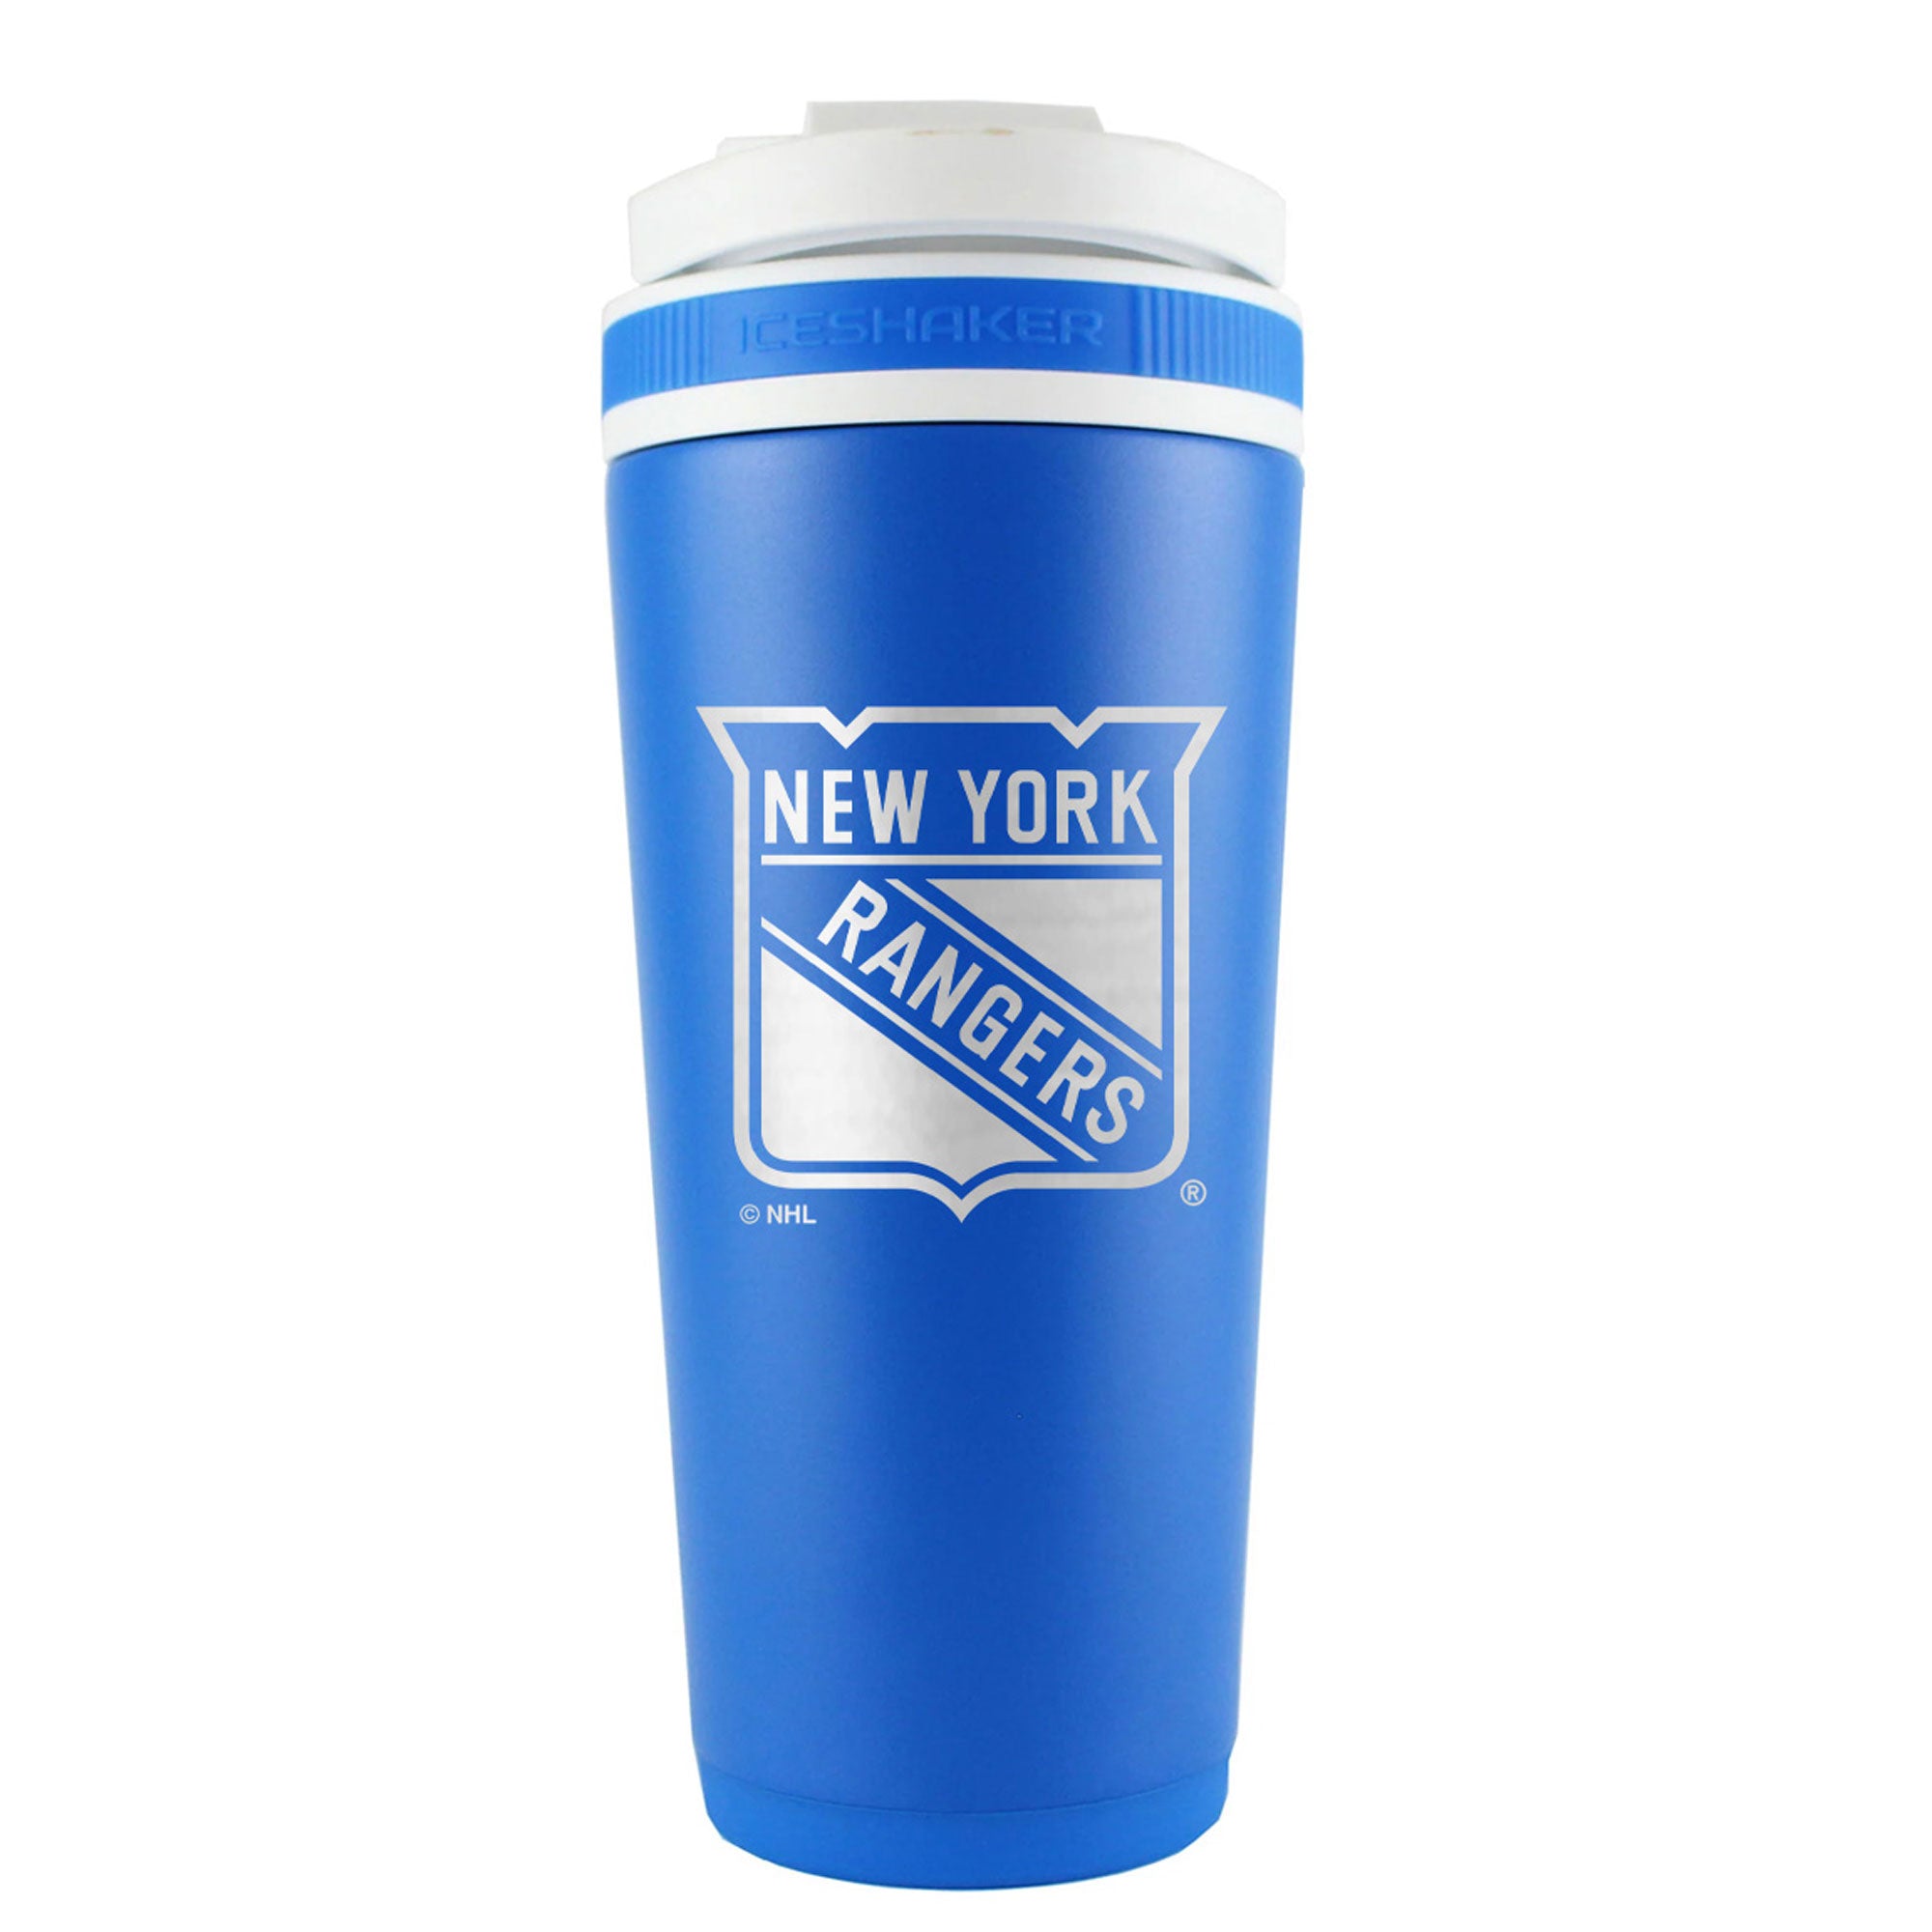 Officially Licensed New York Rangers 26oz Ice Shaker - Royal Blue